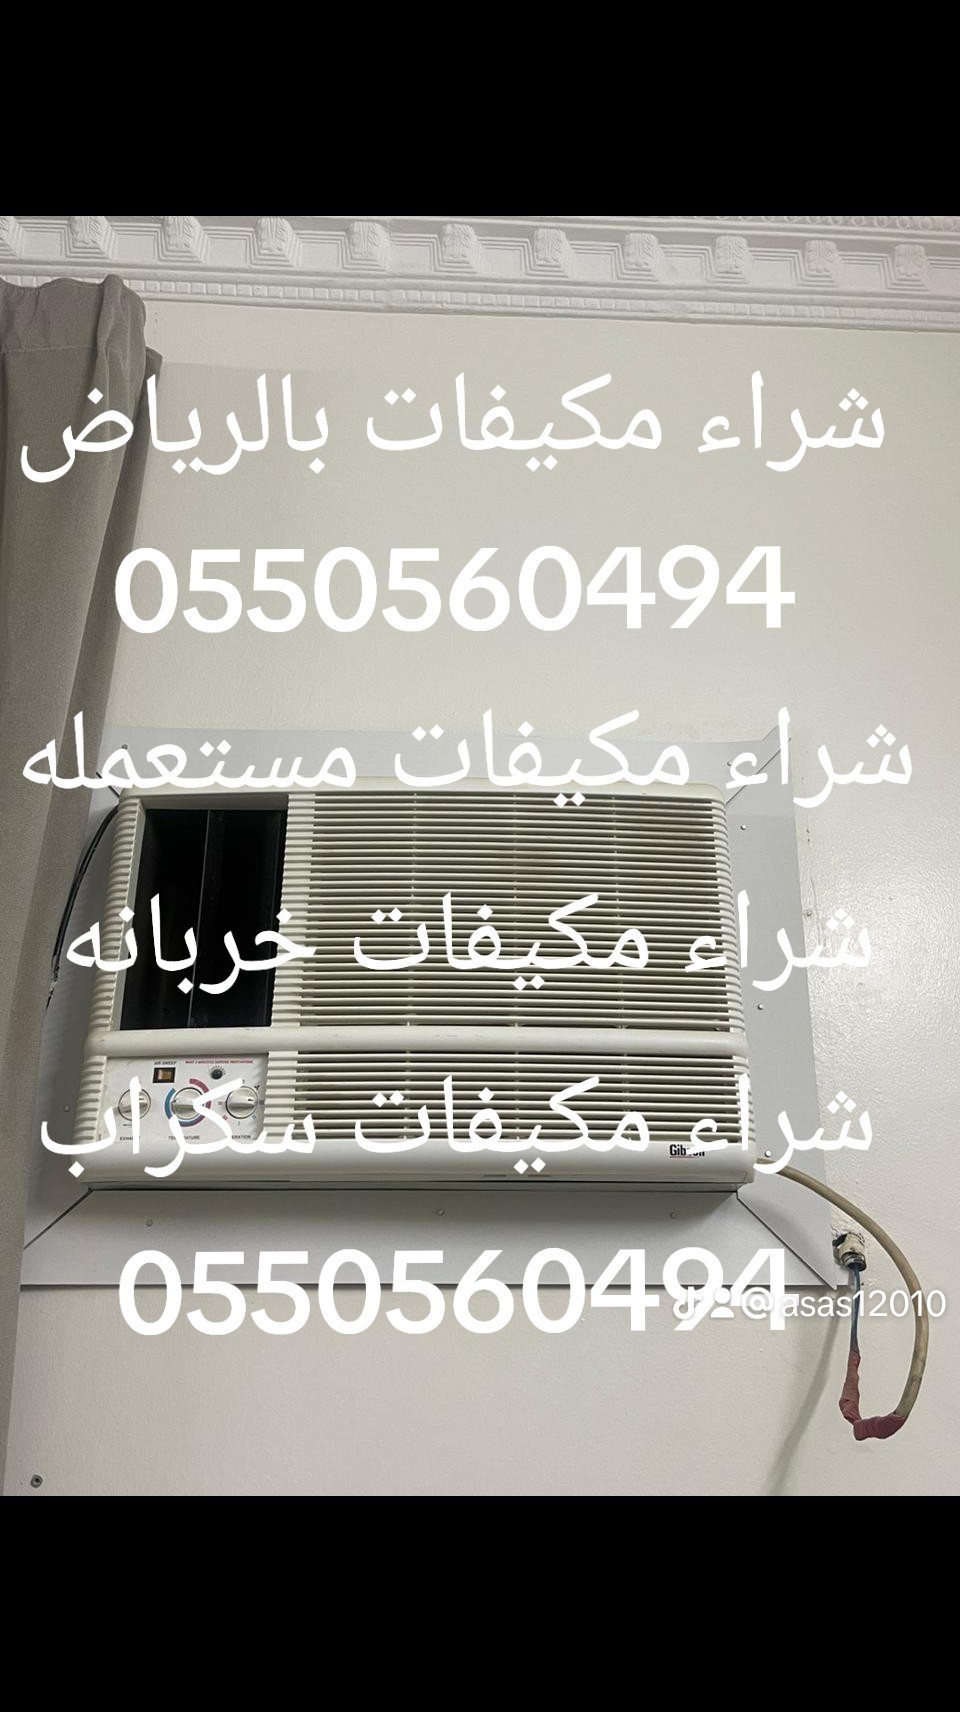 شراء اثاث مستعمل شمال الرياض 0550560494